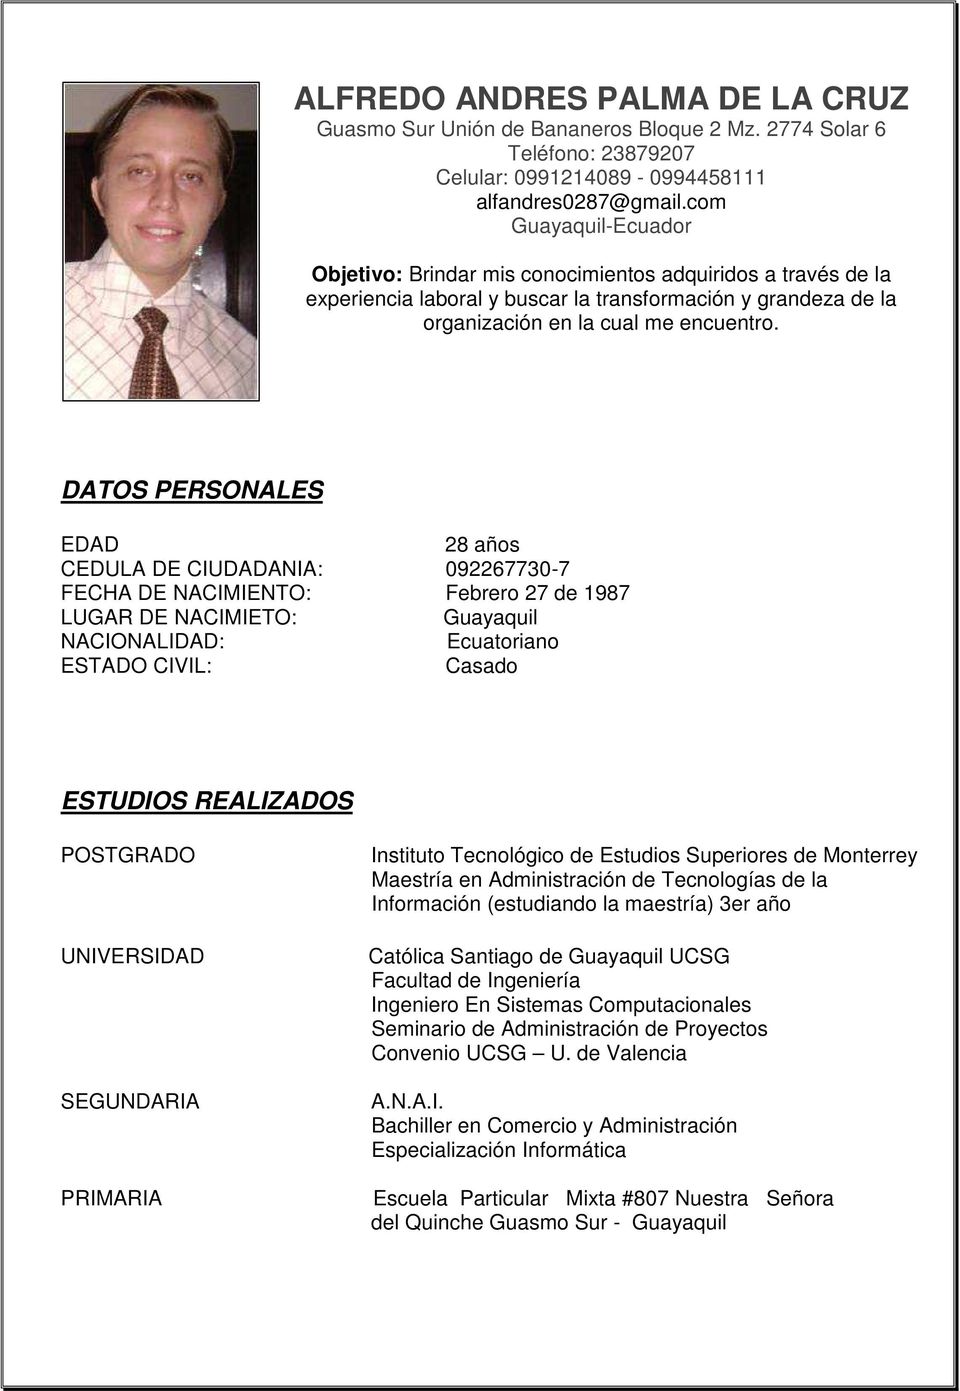 DATOS PERSONALES EDAD 28 años CEDULA DE CIUDADANIA: 092267730-7 FECHA DE NACIMIENTO: Febrero 27 de 1987 LUGAR DE NACIMIETO: Guayaquil NACIONALIDAD: Ecuatoriano ESTADO CIVIL: Casado ESTUDIOS